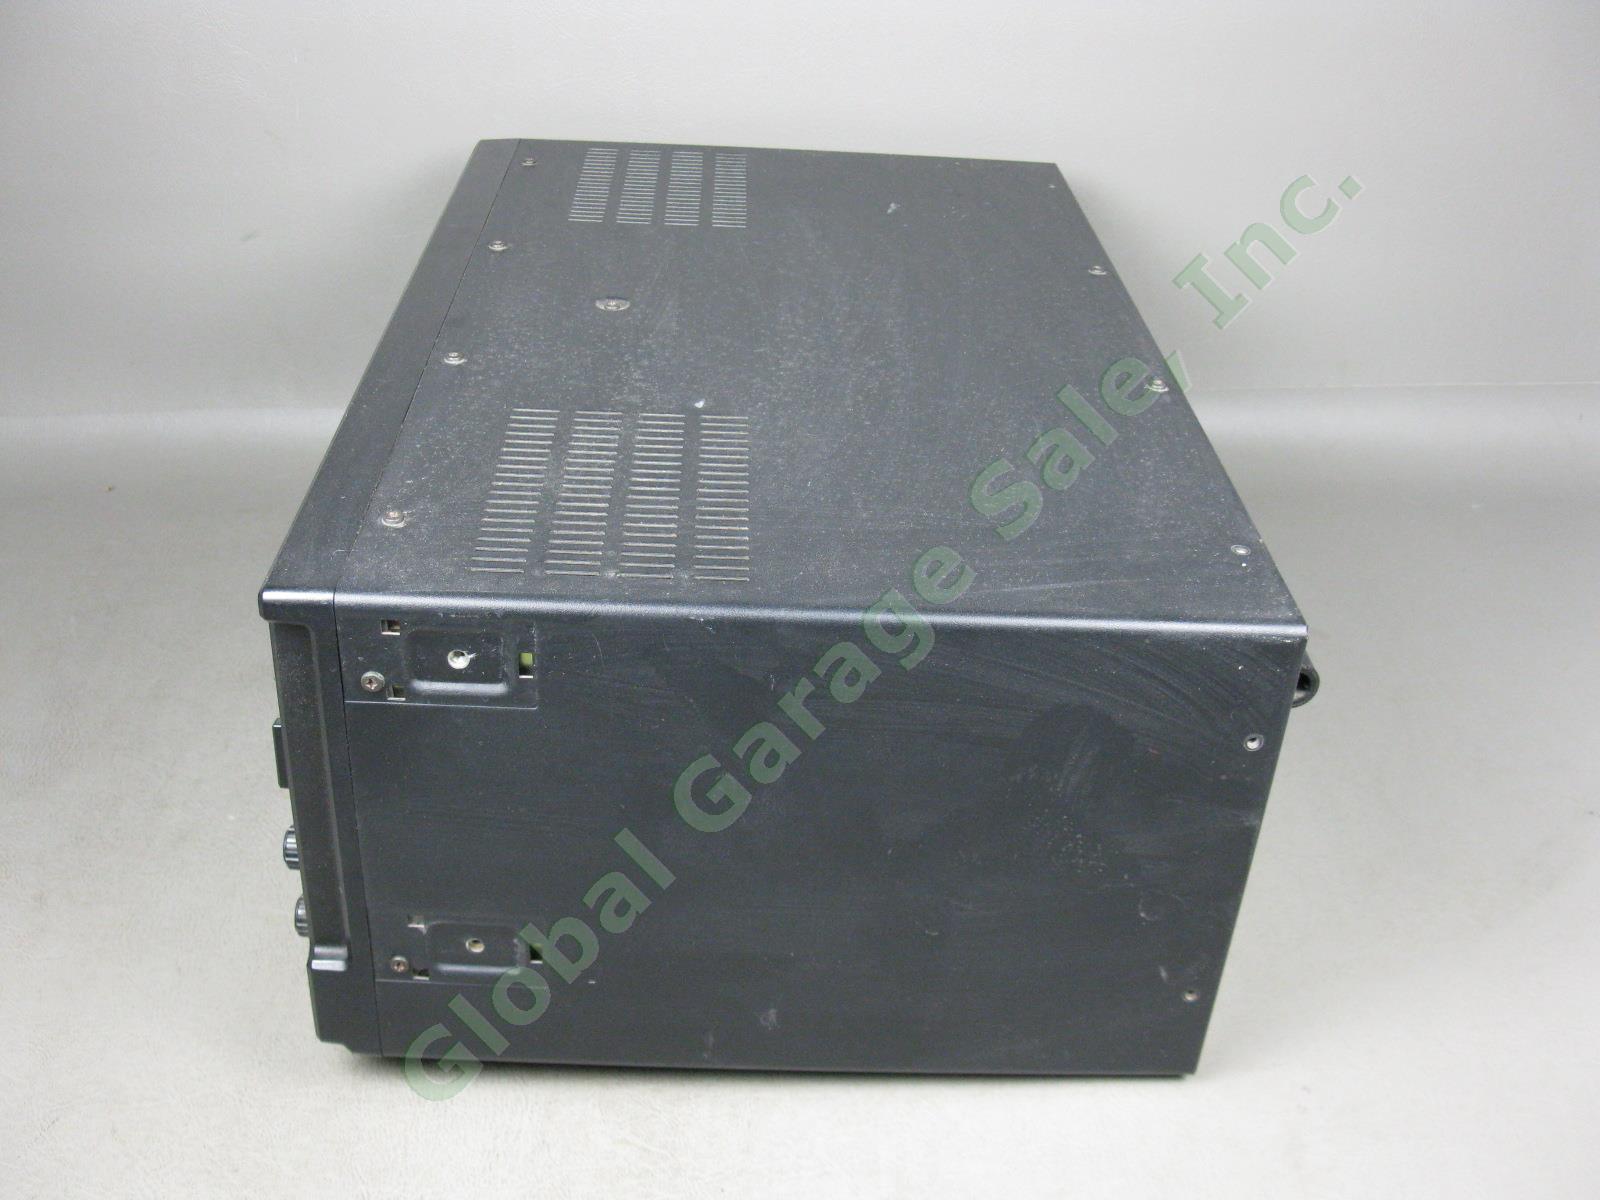 Panasonic RF-4800 FM-AM-SSB-CW 10-Band Shortwave Radio Communication Receiver NR 5